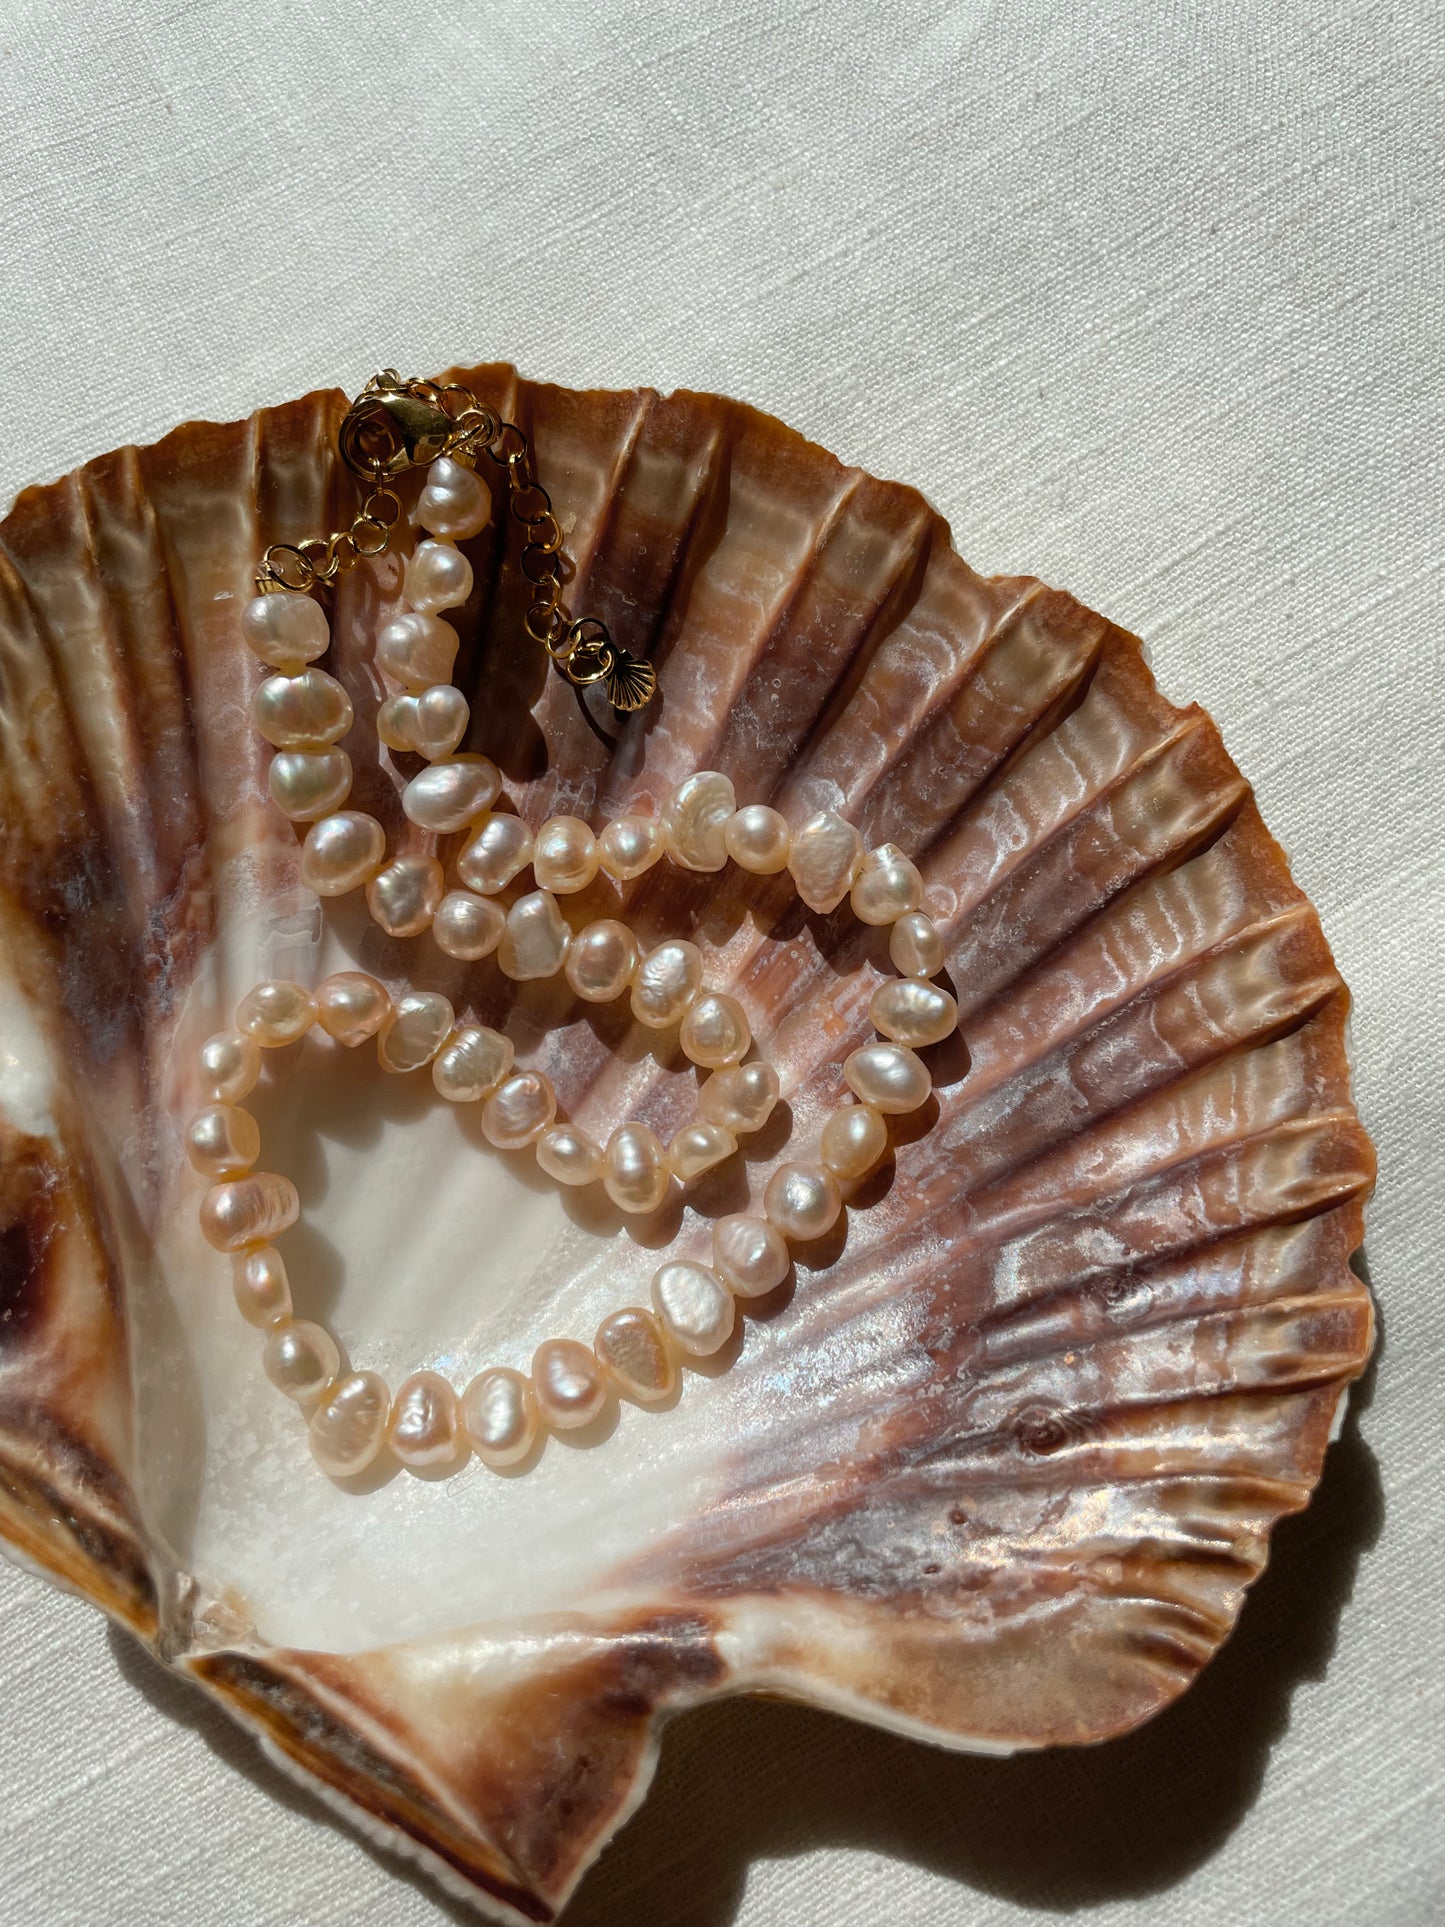 Coralia pearl necklace